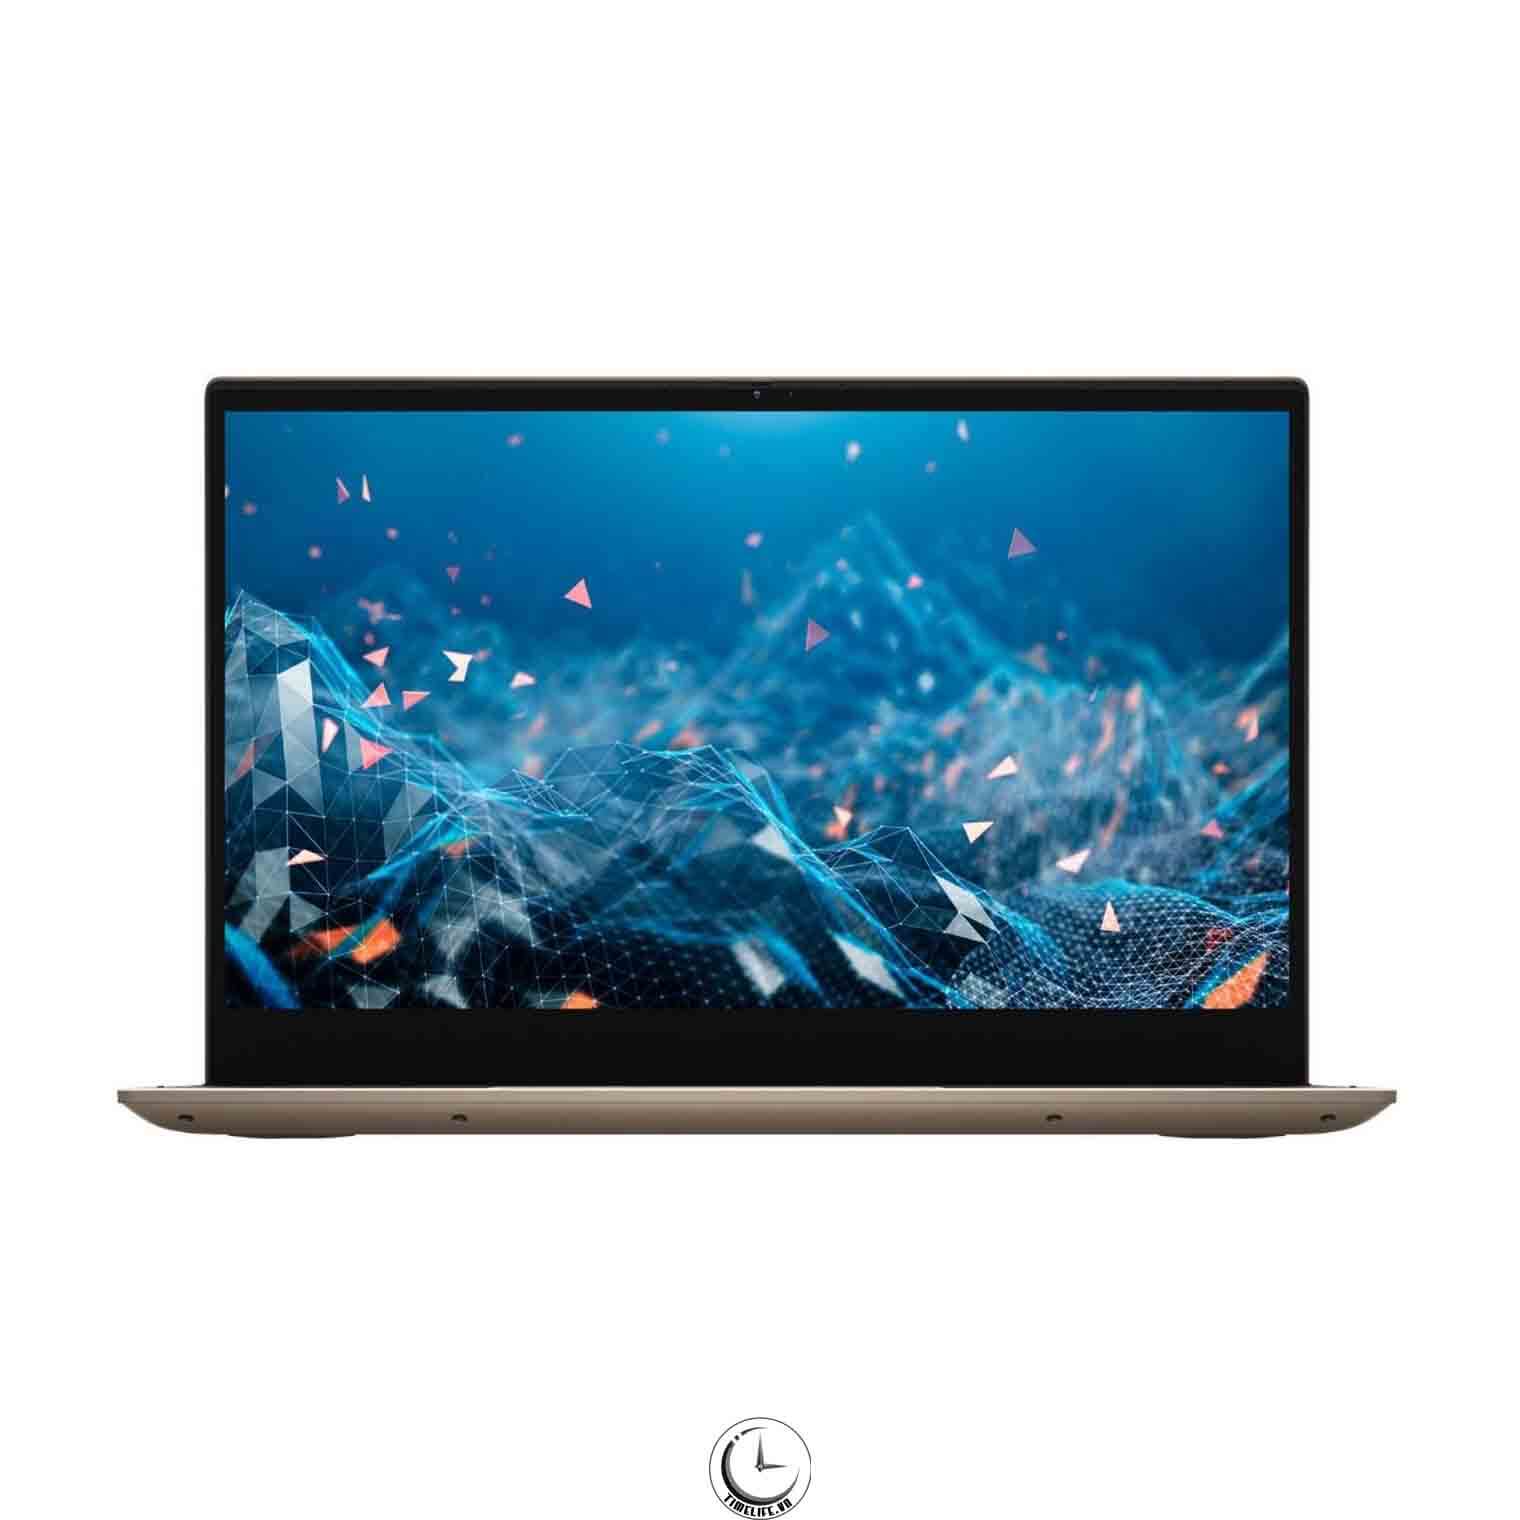 Dell Inspiron 14 7405 2-in-1 Laptop chính hãng giá Tốt - Hàng  xách tay chính hãng tại Việt Nam